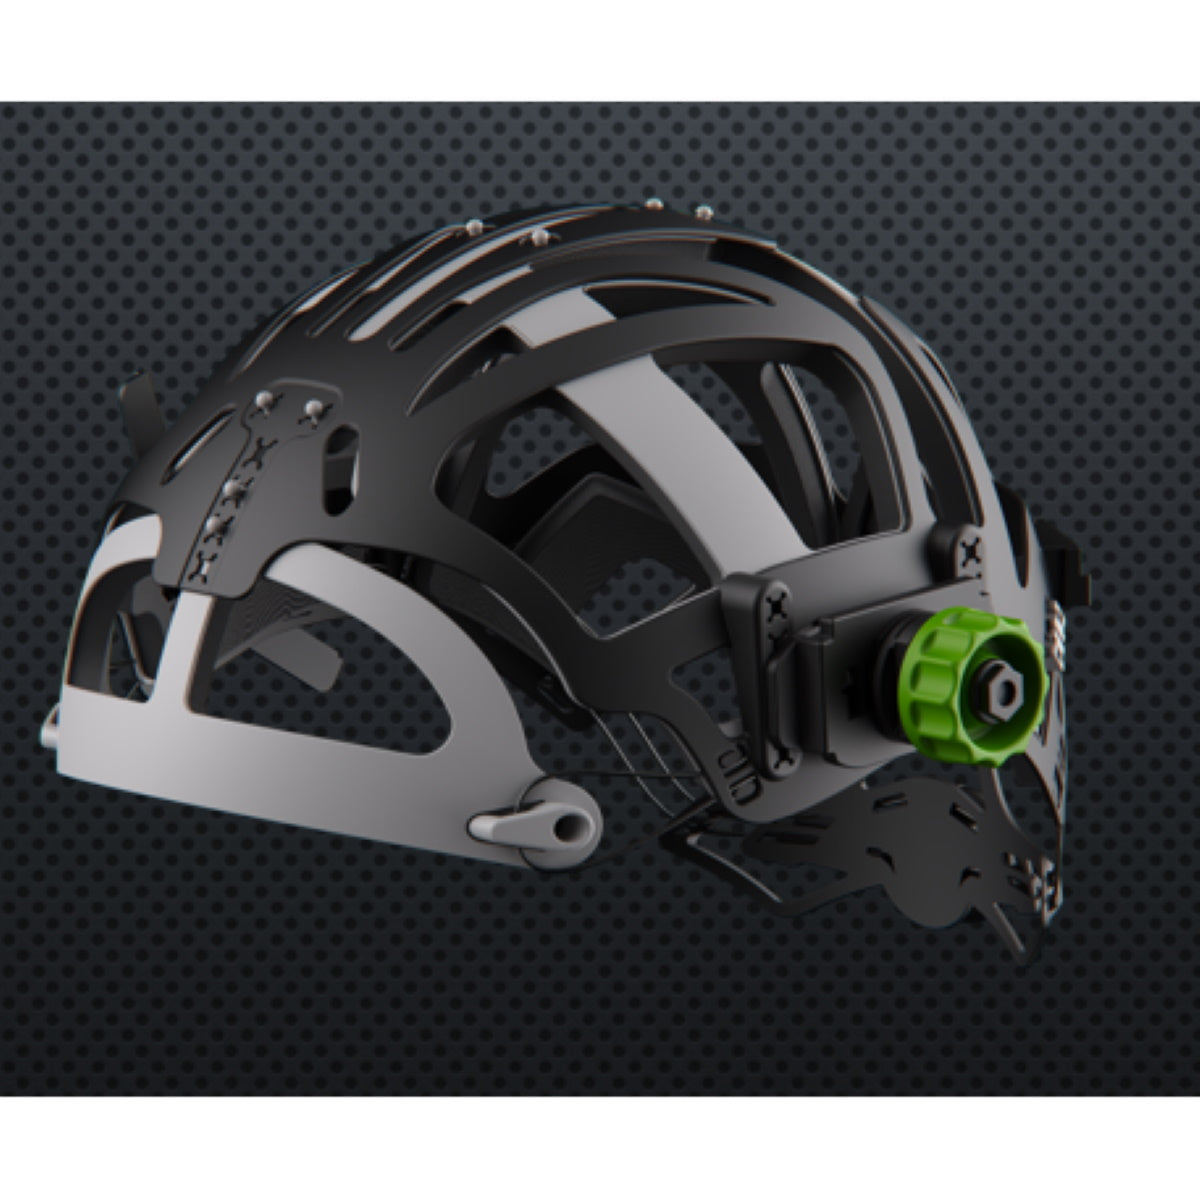 Optrel Panoramaxx CLT Black Welding Helmet (1010.200)